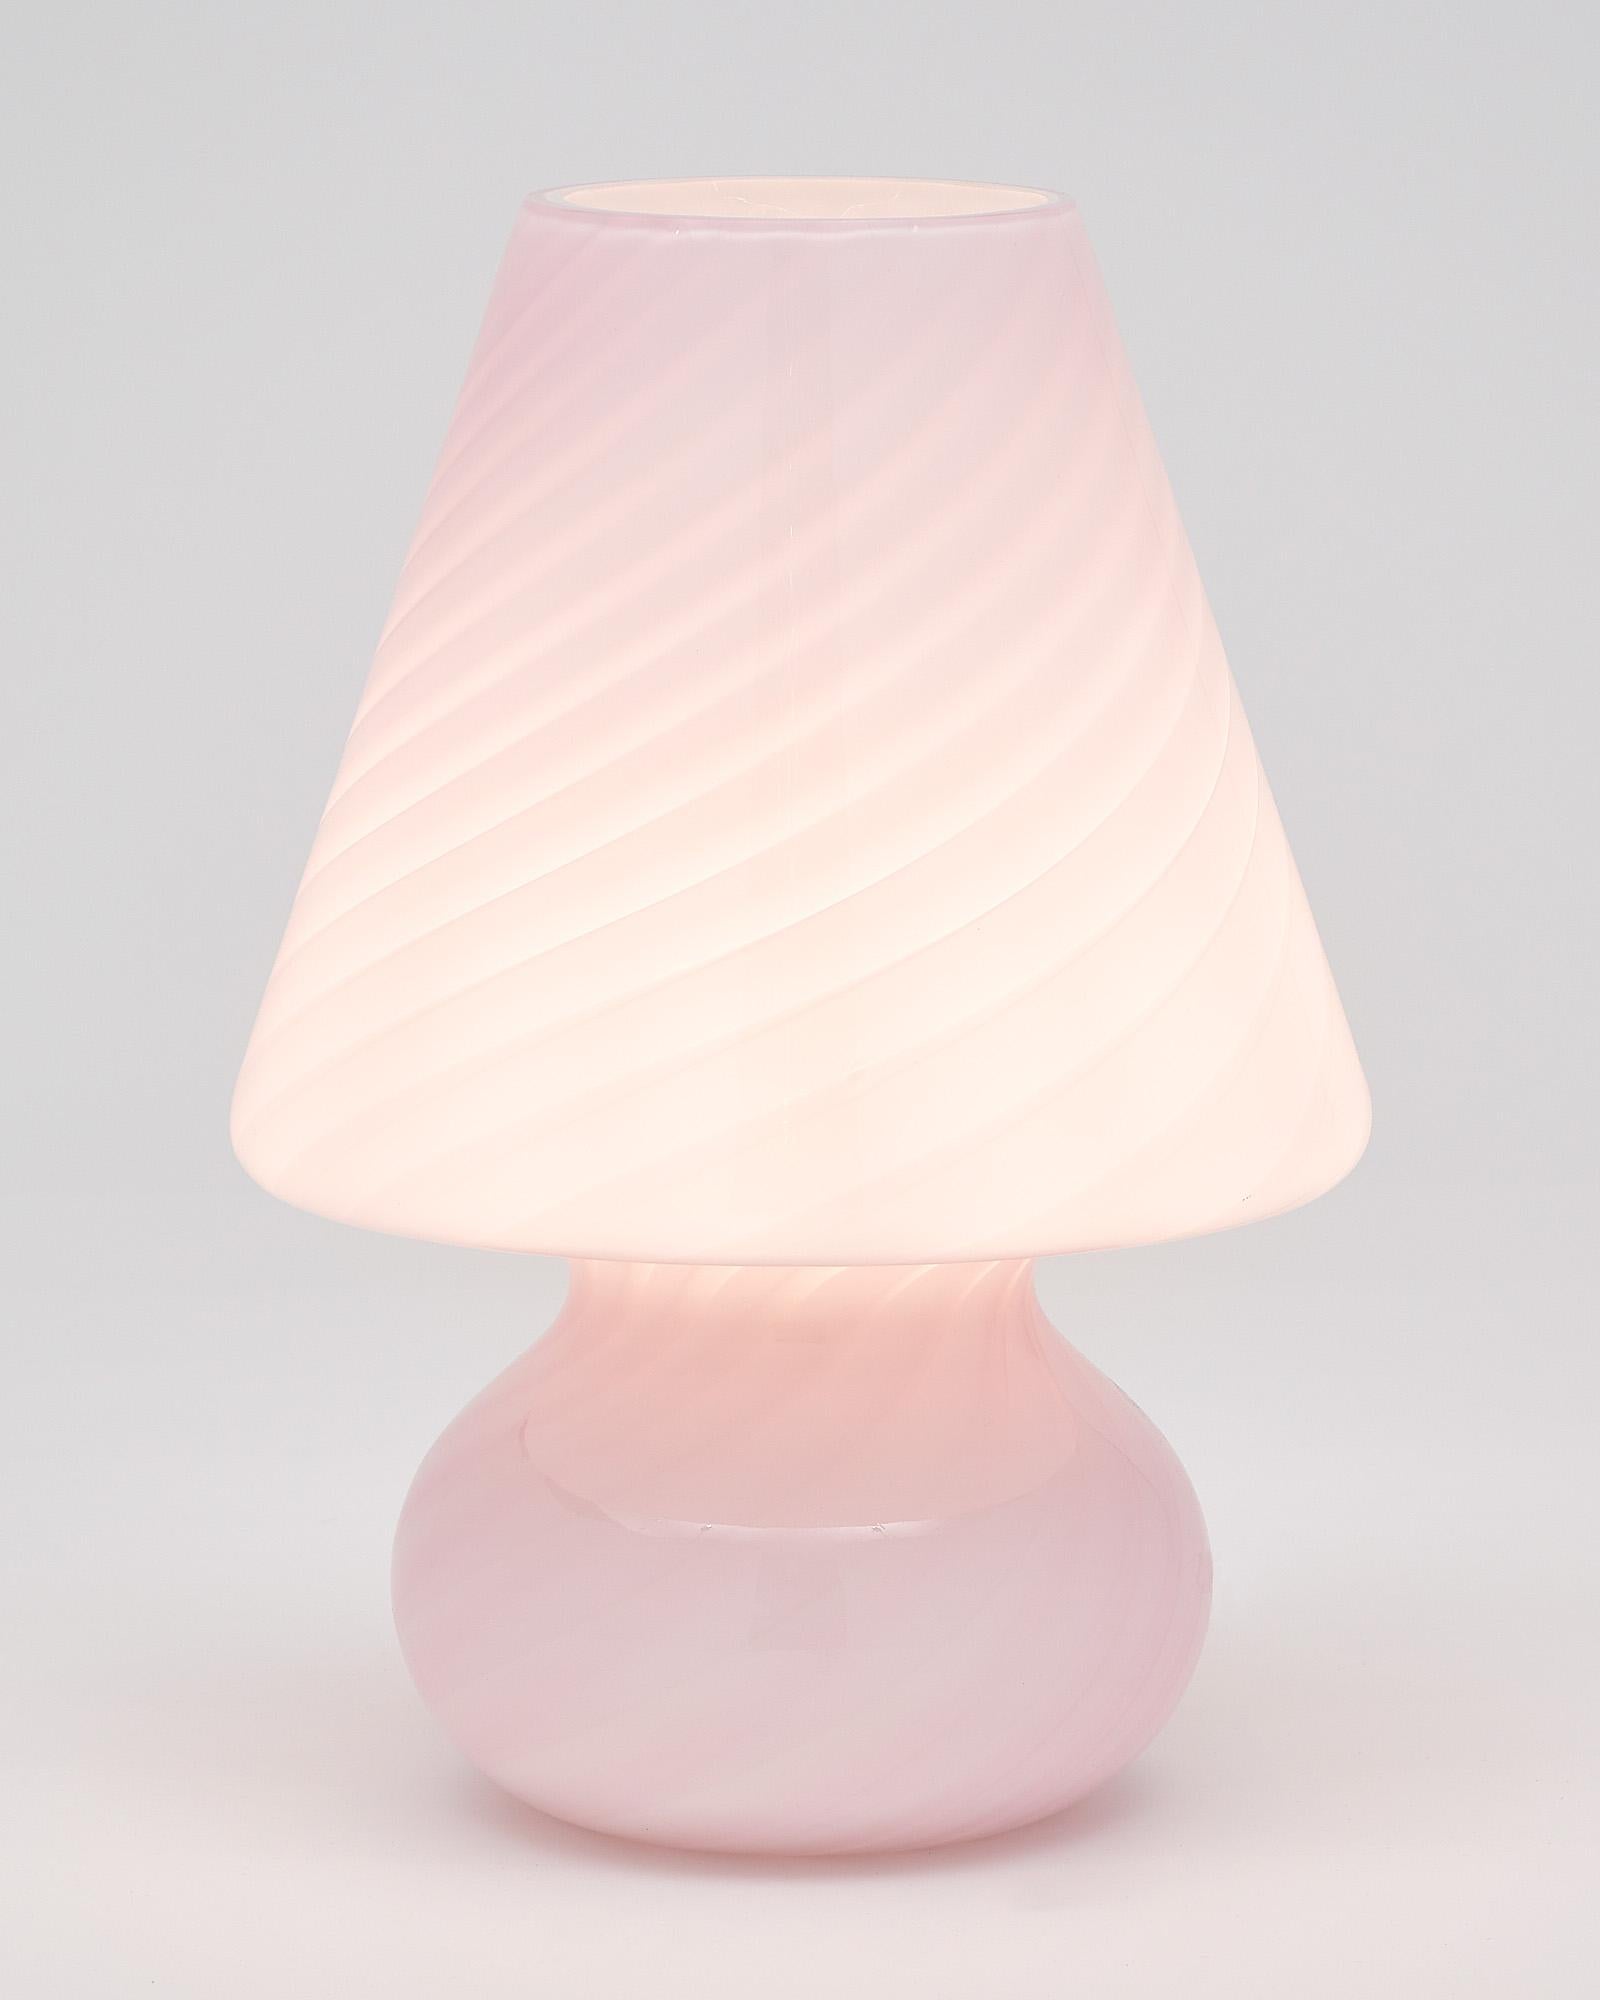 Glaslampe von der Insel Murano. Dieses mundgeblasene, kunstvolle Stück kombiniert rosa und weißes Glas in einer wirbelnden Dynamik. Es wurde neu verkabelt, um den US-Standards zu entsprechen.